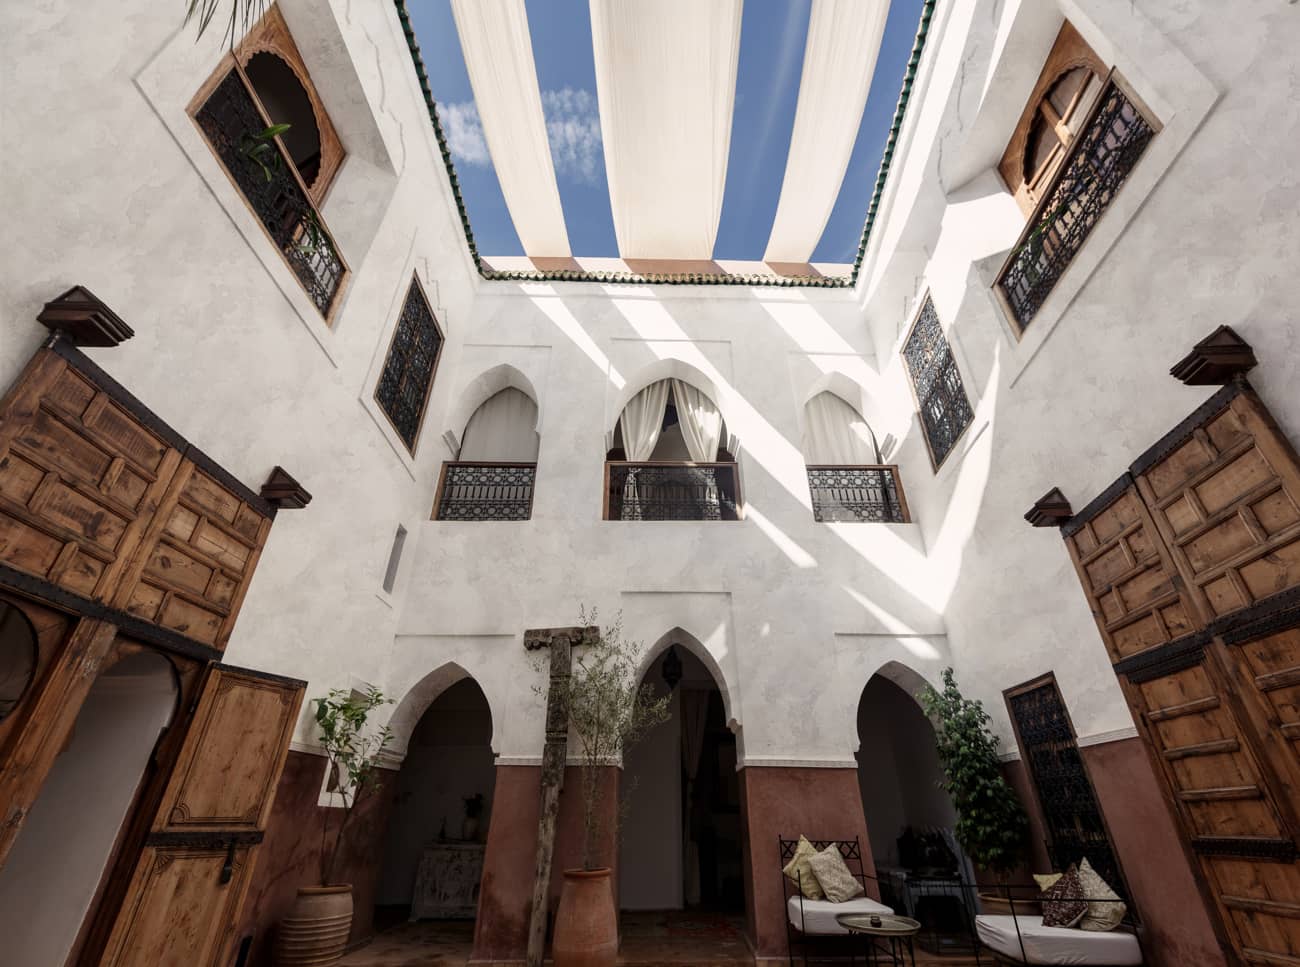 tadelakt su pareti di abitazioni di ispirazione marocchina